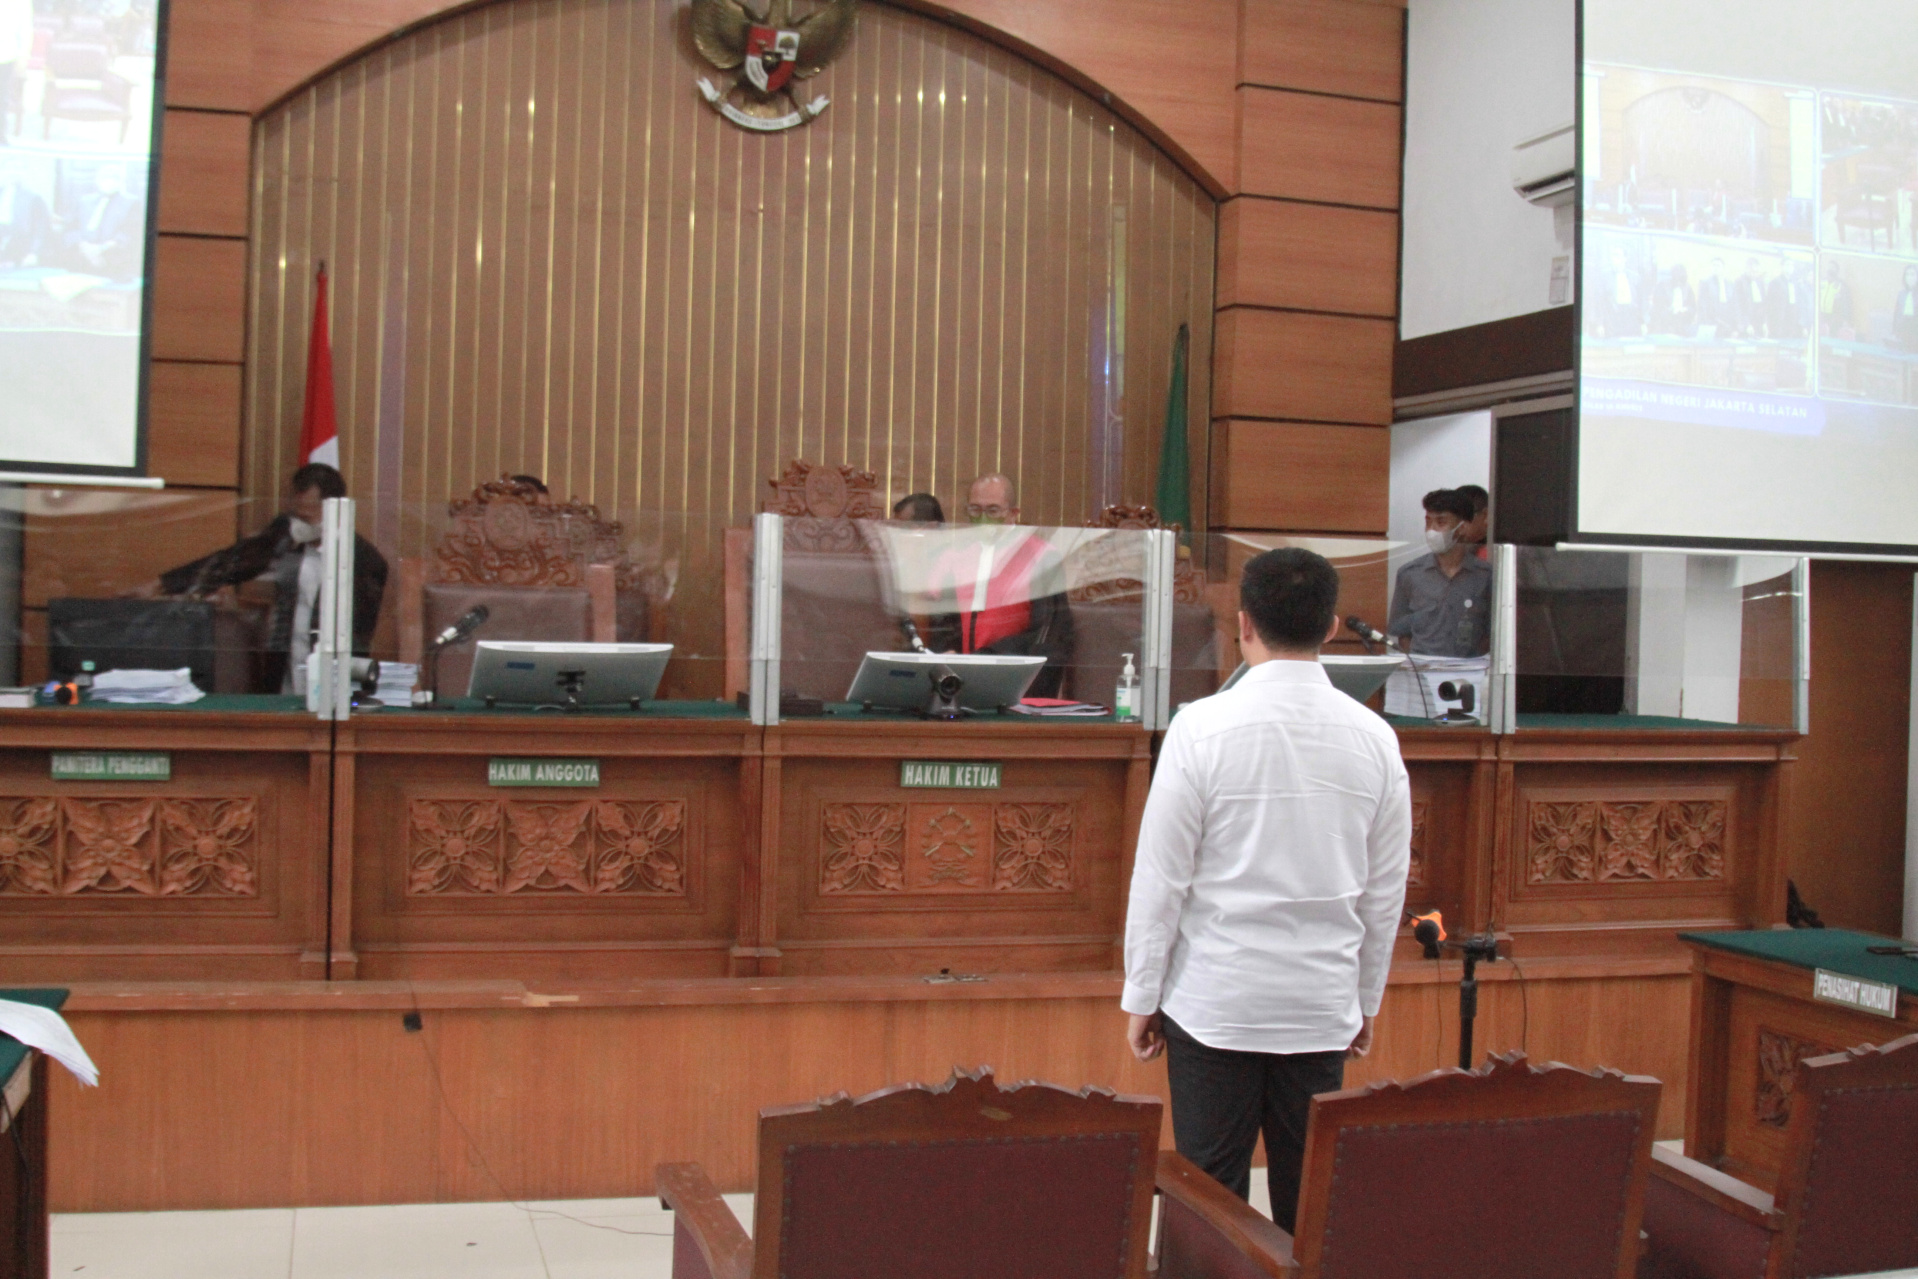 Sidang pembacaan putusan sela Arif Rahman Arifin di Pengadilan Negeri Jakarta Selatan (Ashar/SinPo.id)